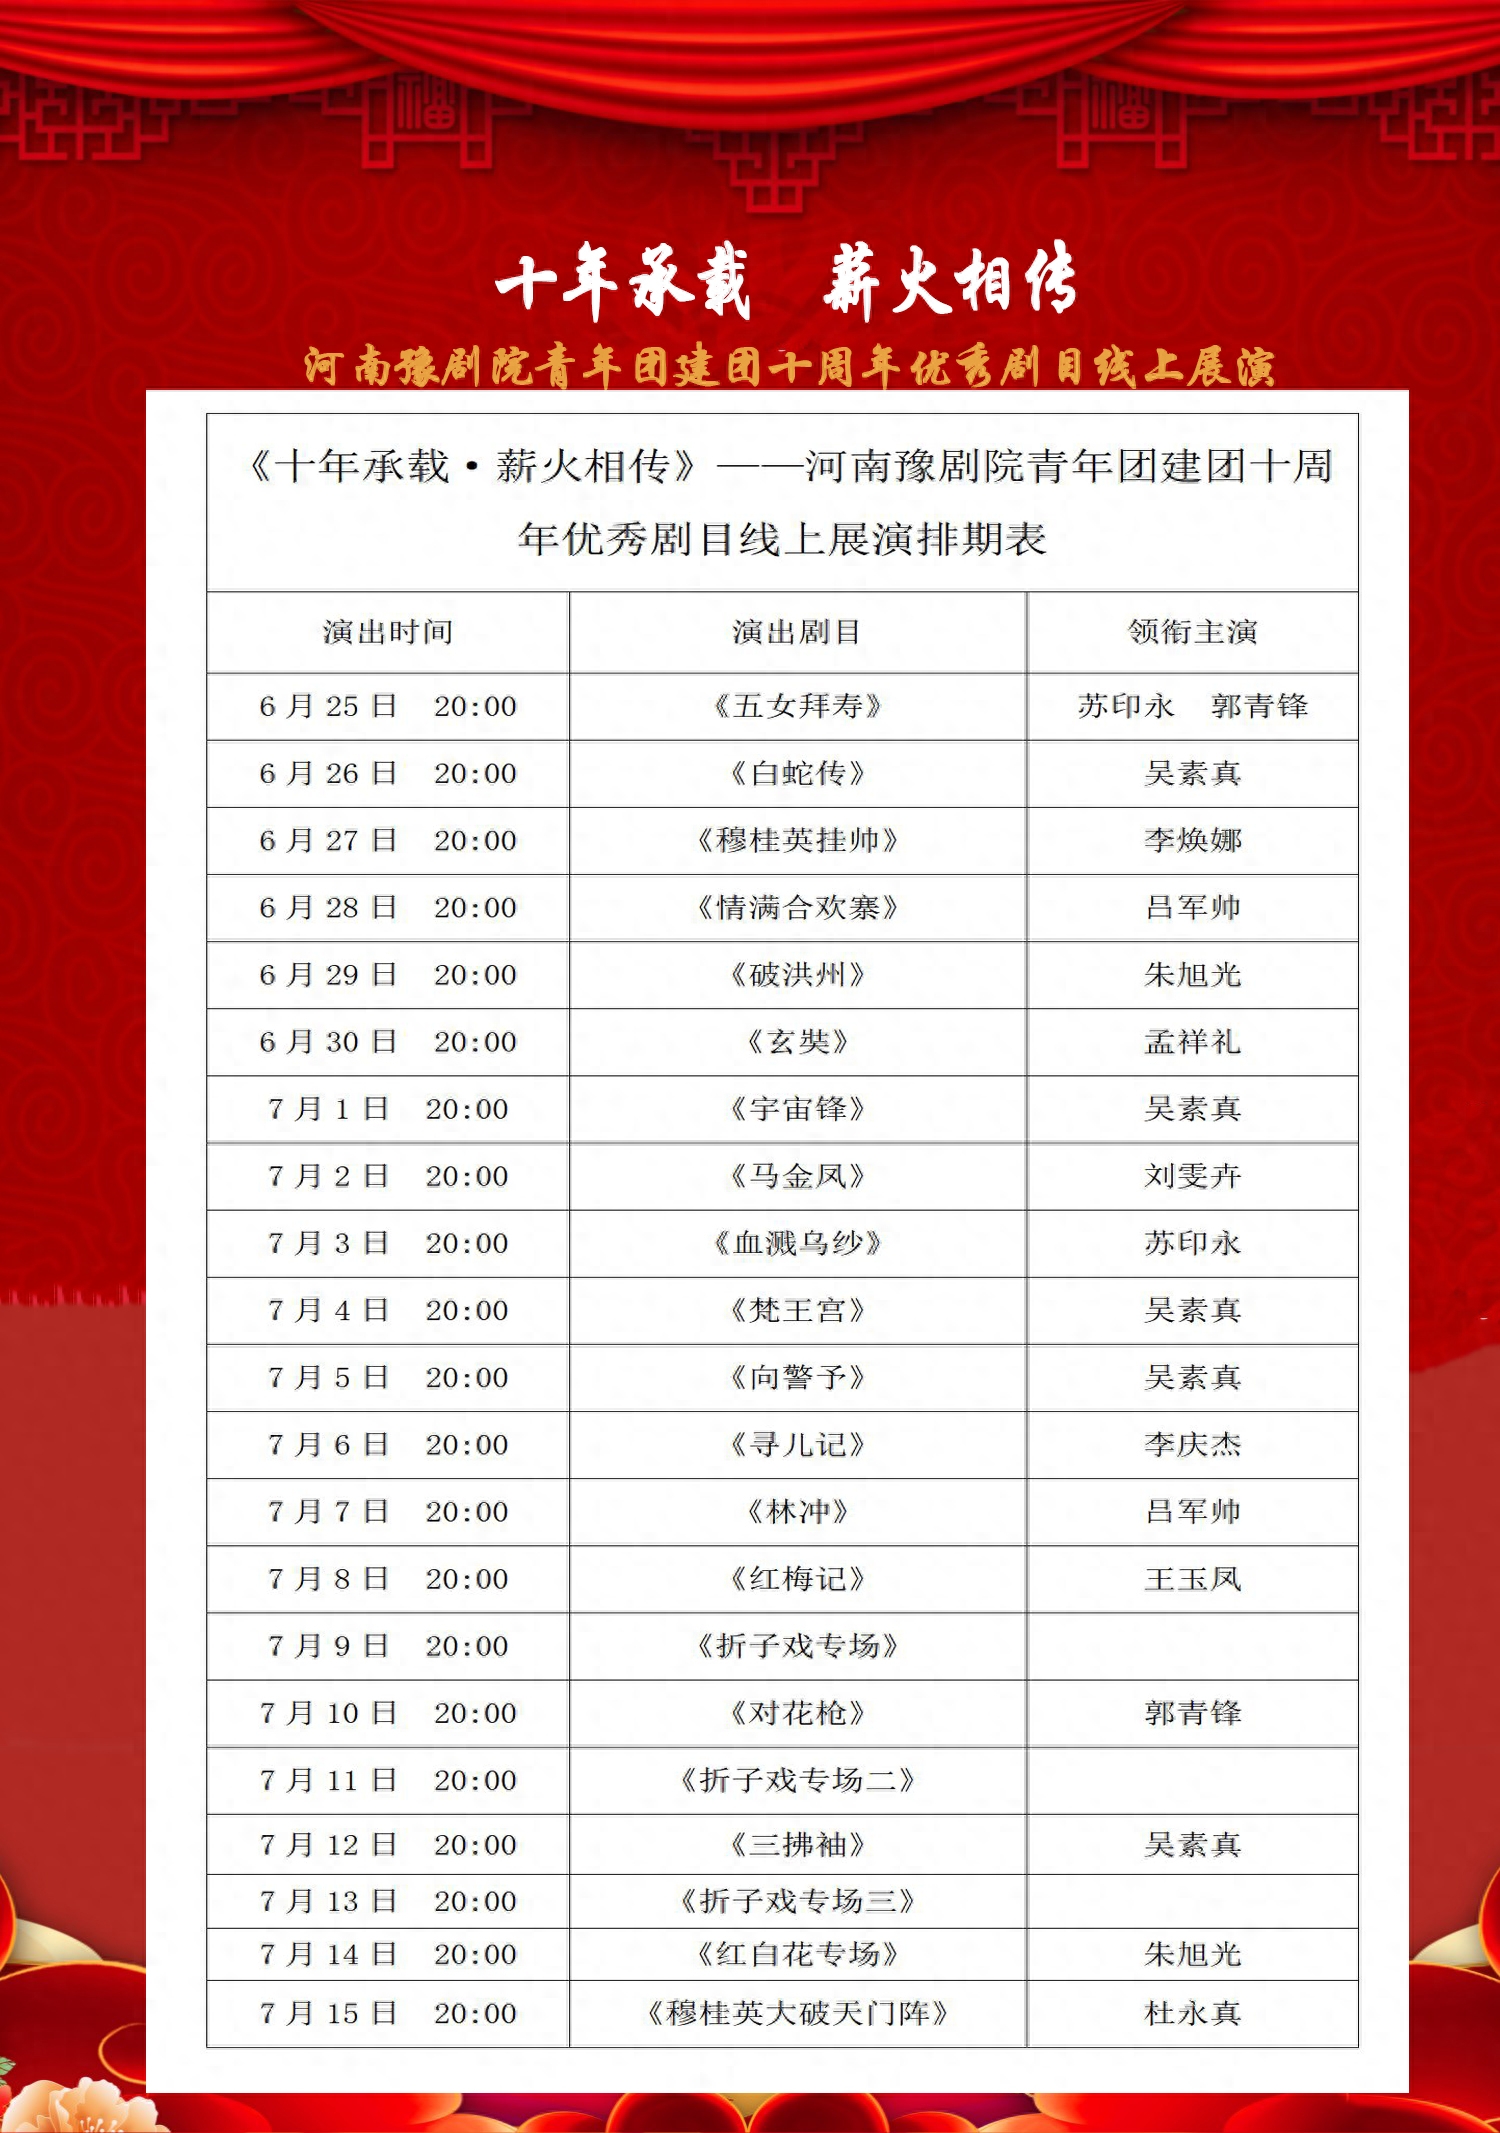 河南豫剧院青年团喜迎建团十周年，今日展播剧目《玄奘》！